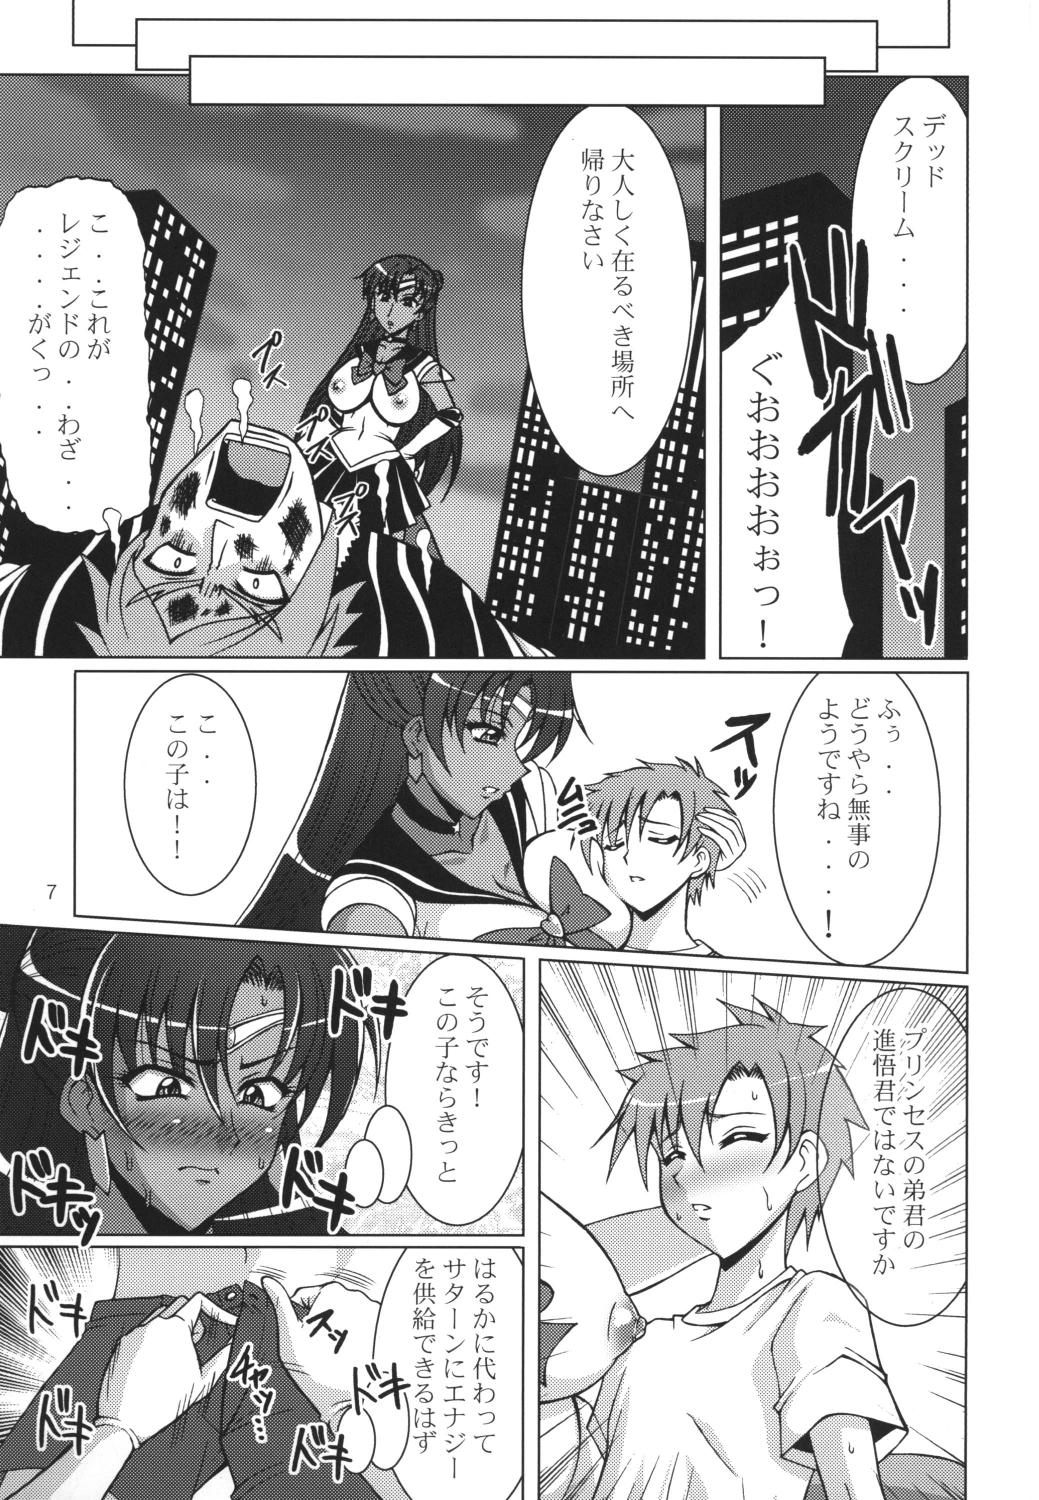 Casado Rojou no Meiousei - Sailor moon Sister - Page 6